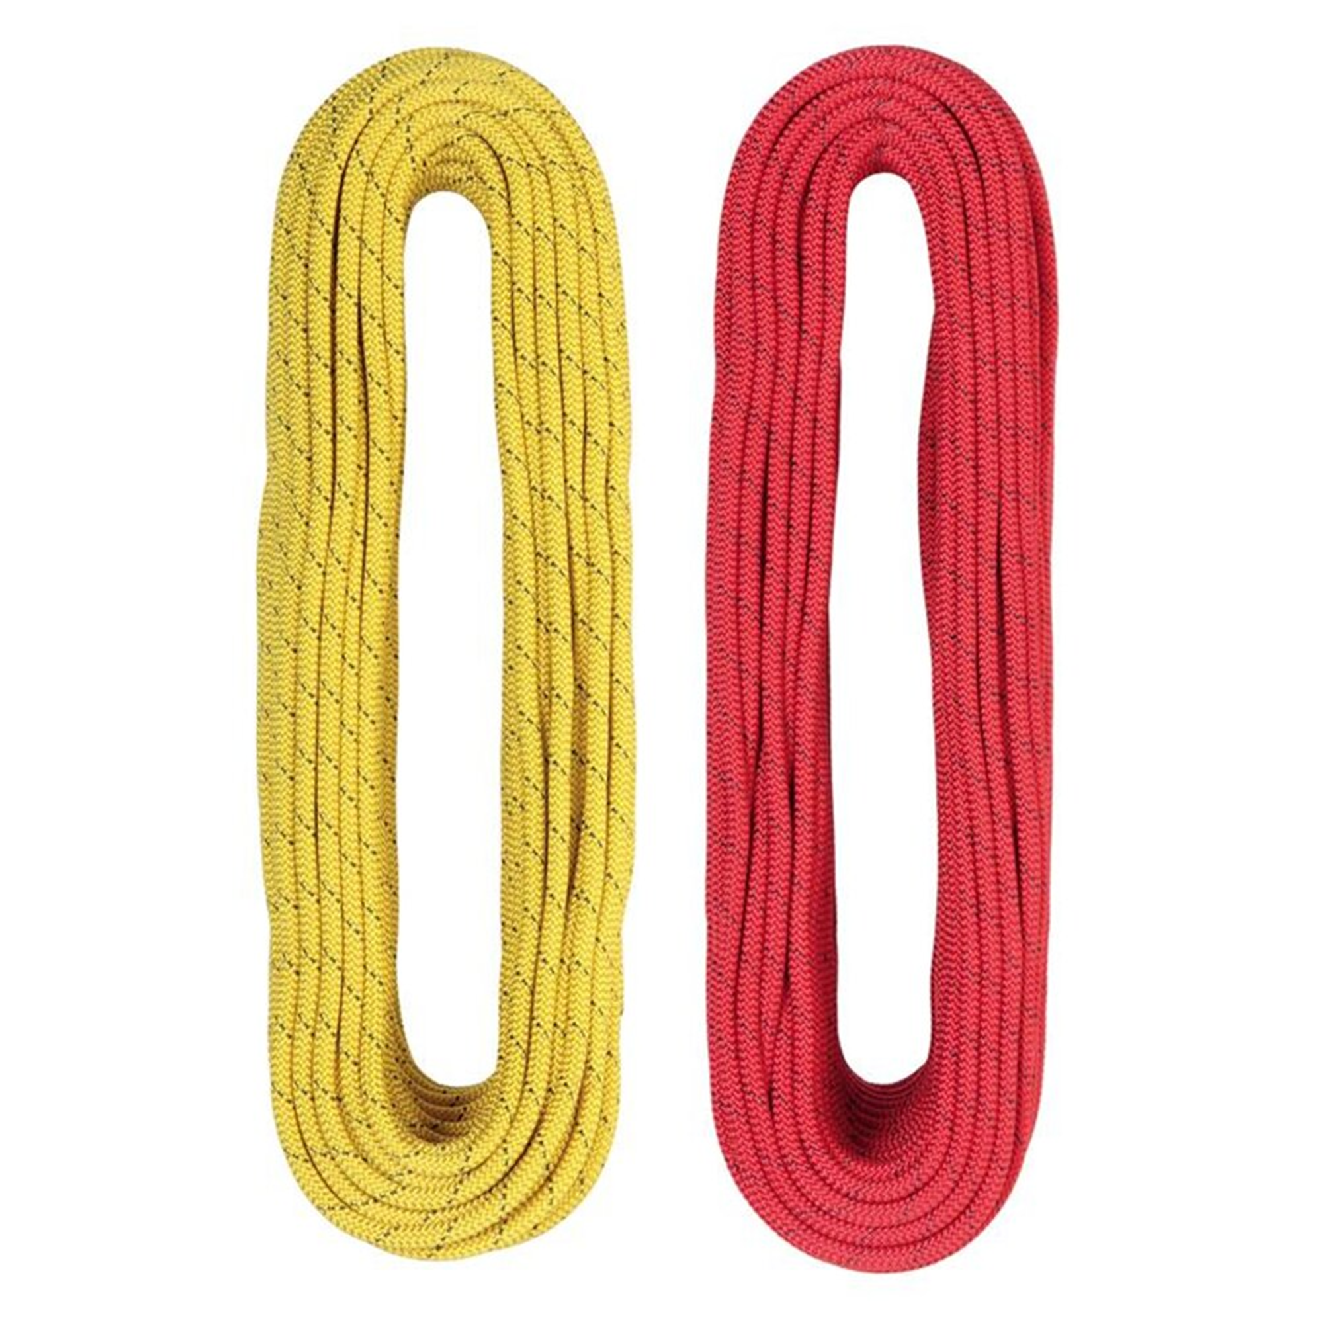 Singing Rock lano Gemini Dry 7,9 - 80 m Barva: červená, Typ: Impregnace opletu a jádra, Velikost: 80 m